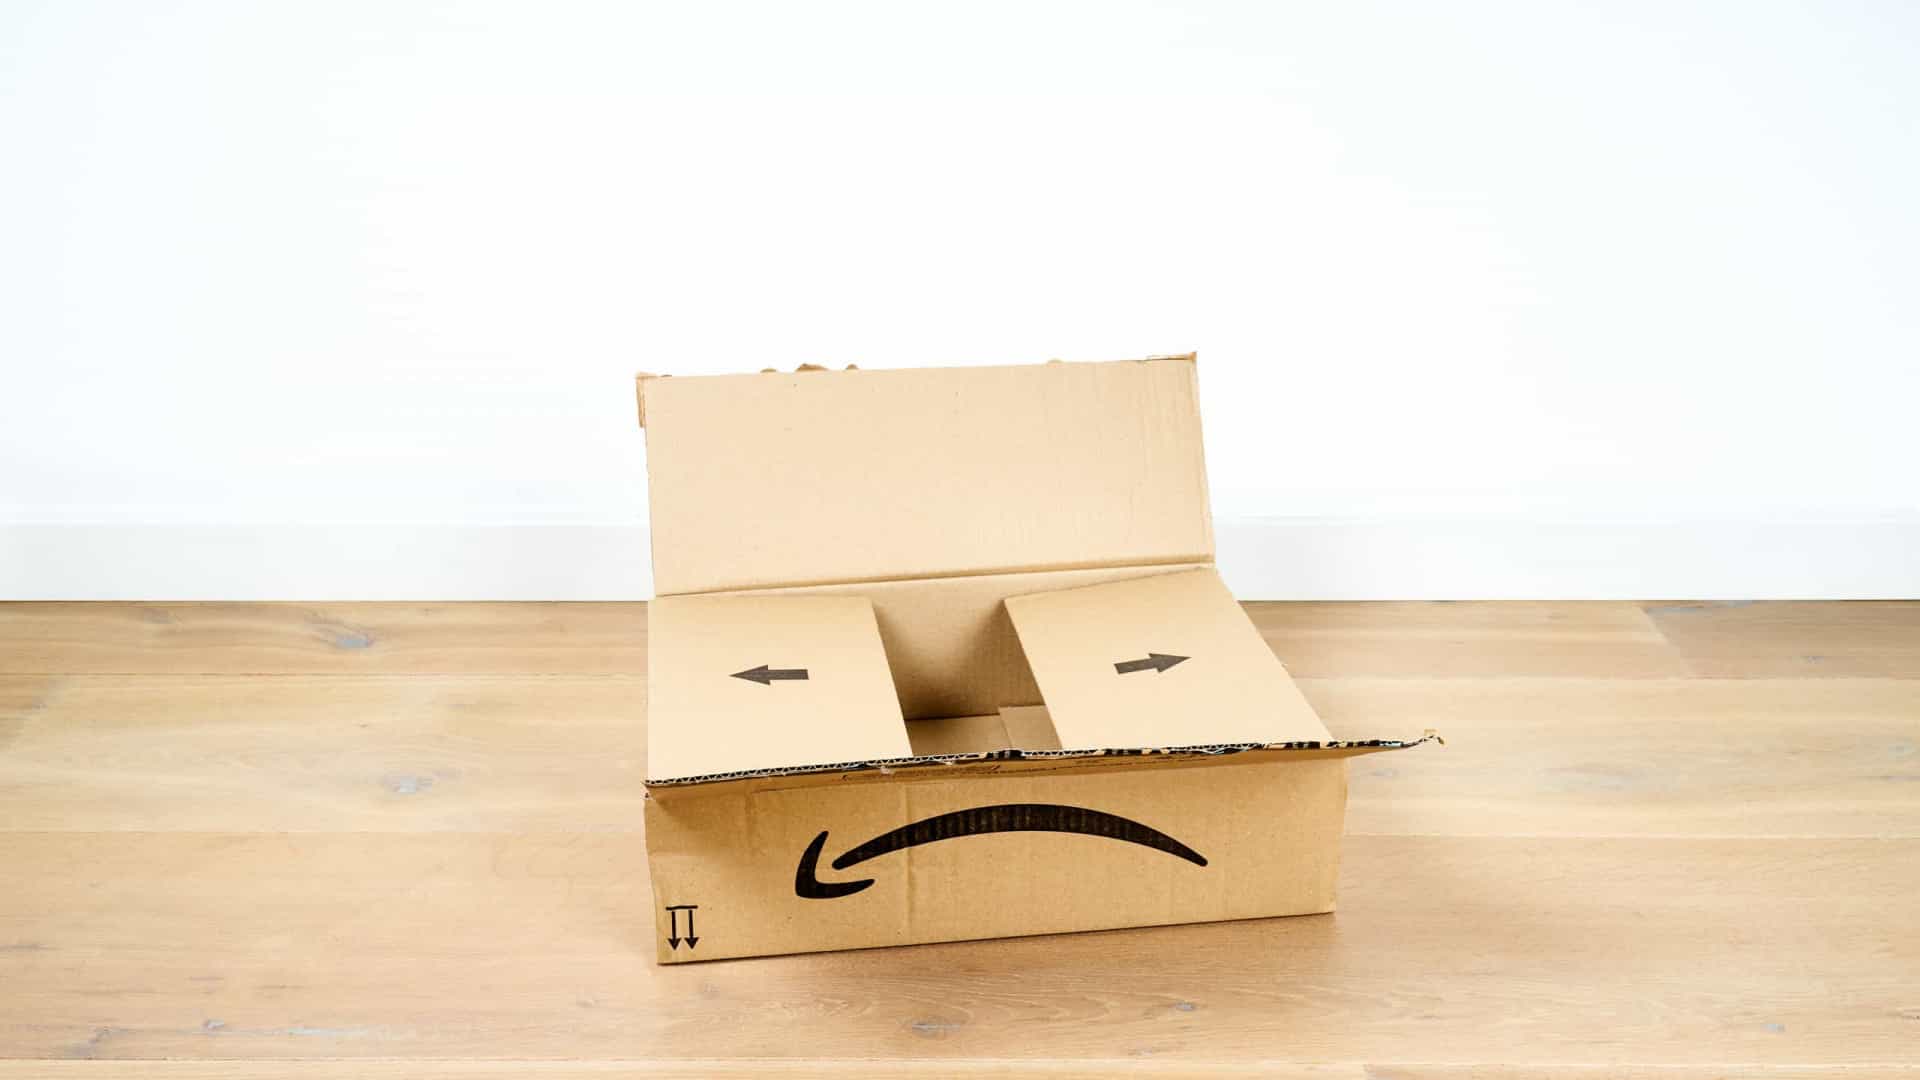 Amazon planeja abrir lojas de departamento nos EUA